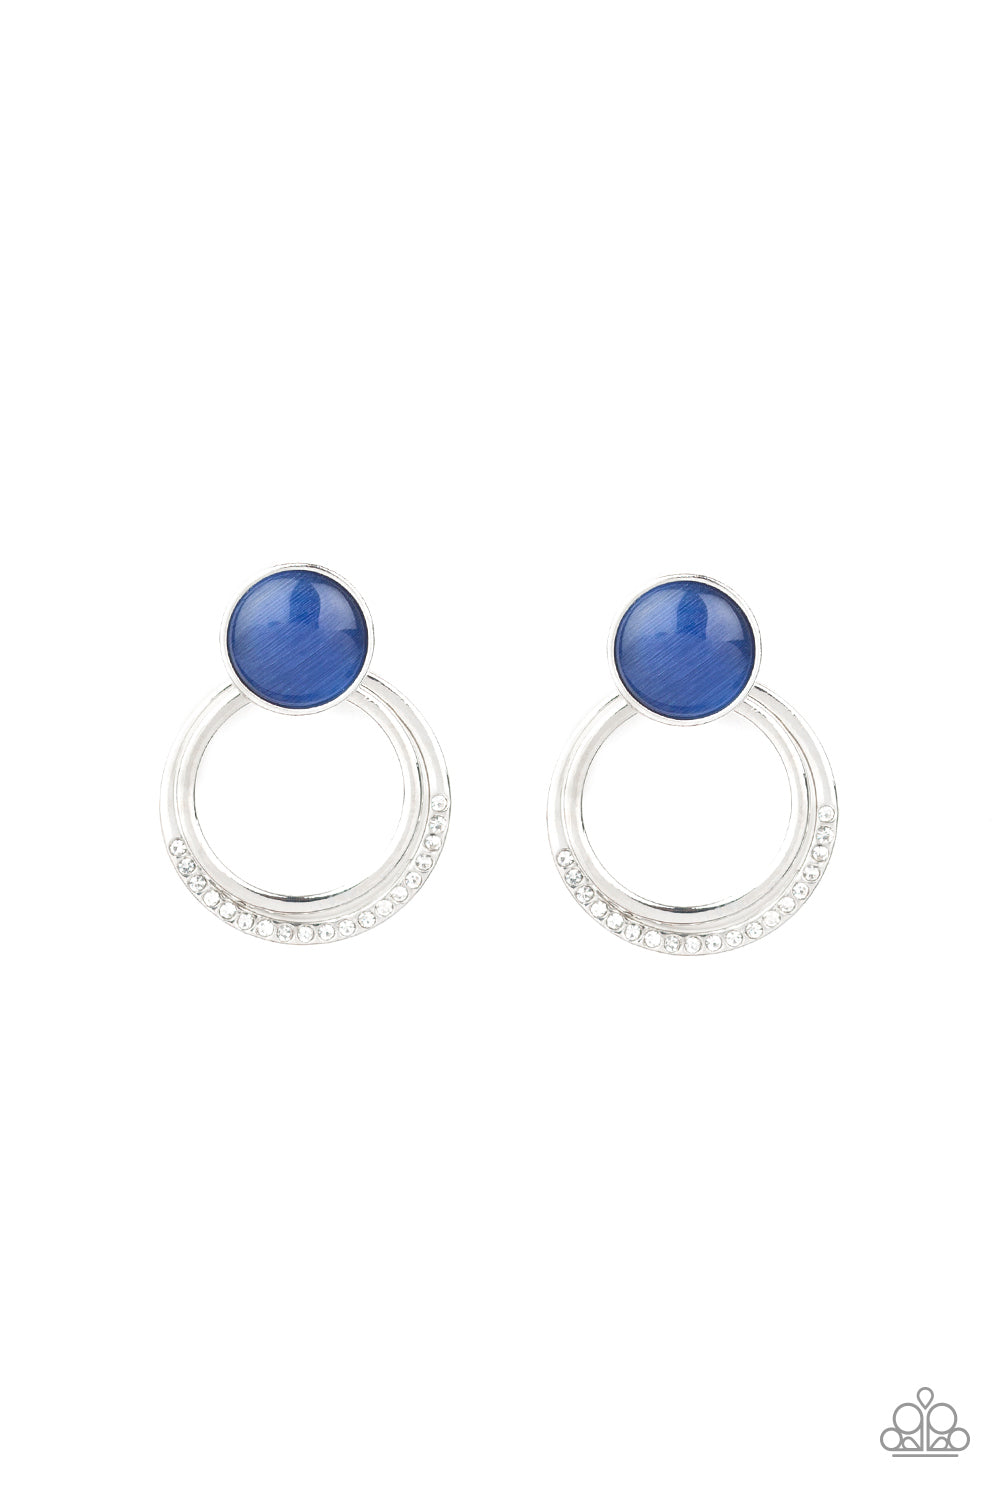 Glow Roll - blue - Paparazzi earrings